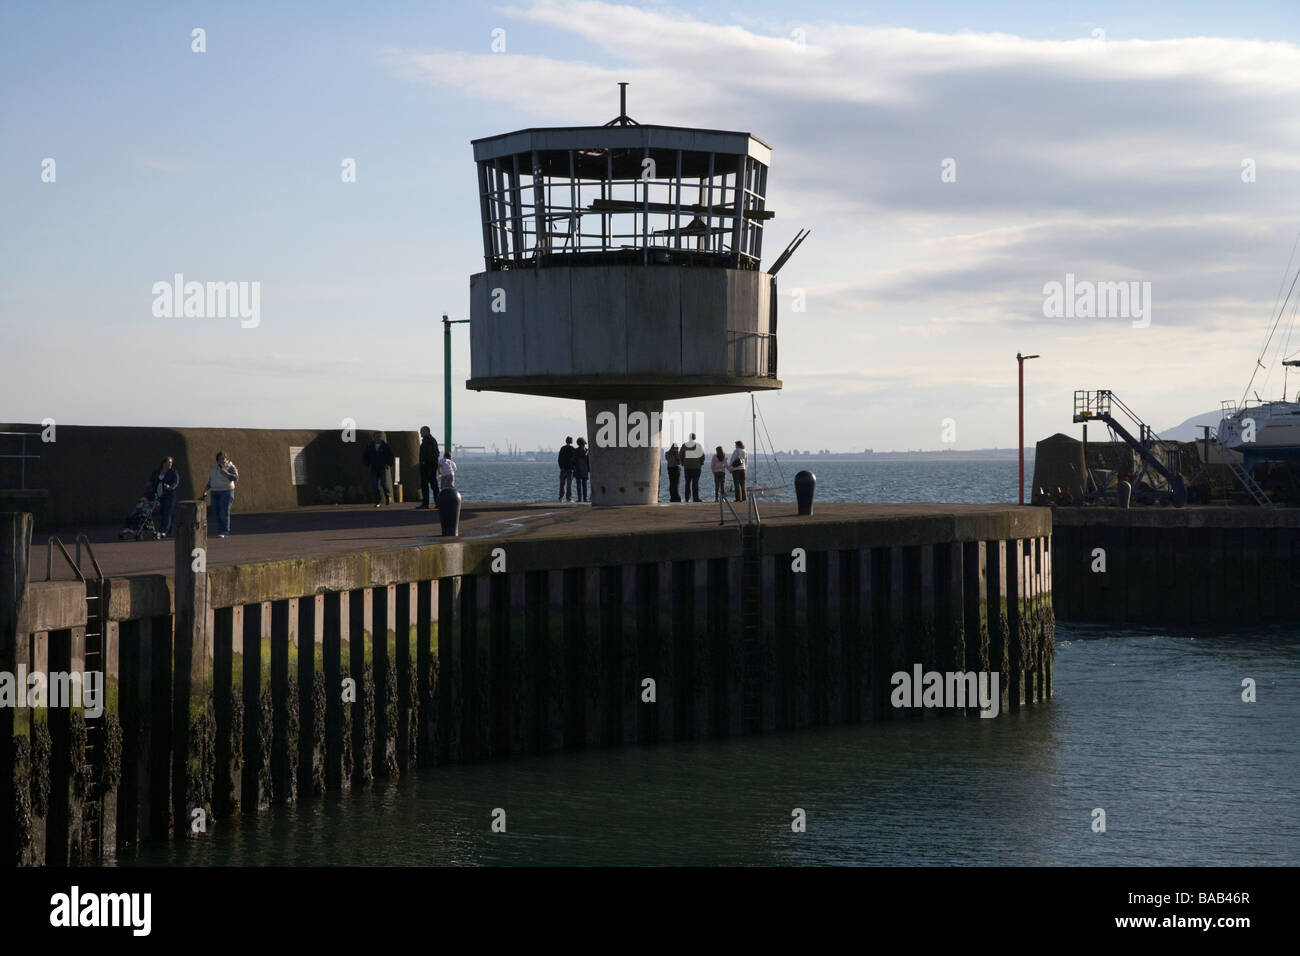 Ingresso a carrickfergus harbour con la ex radio torre di controllo ora abbandonata ma con piani per il ripristino Foto Stock